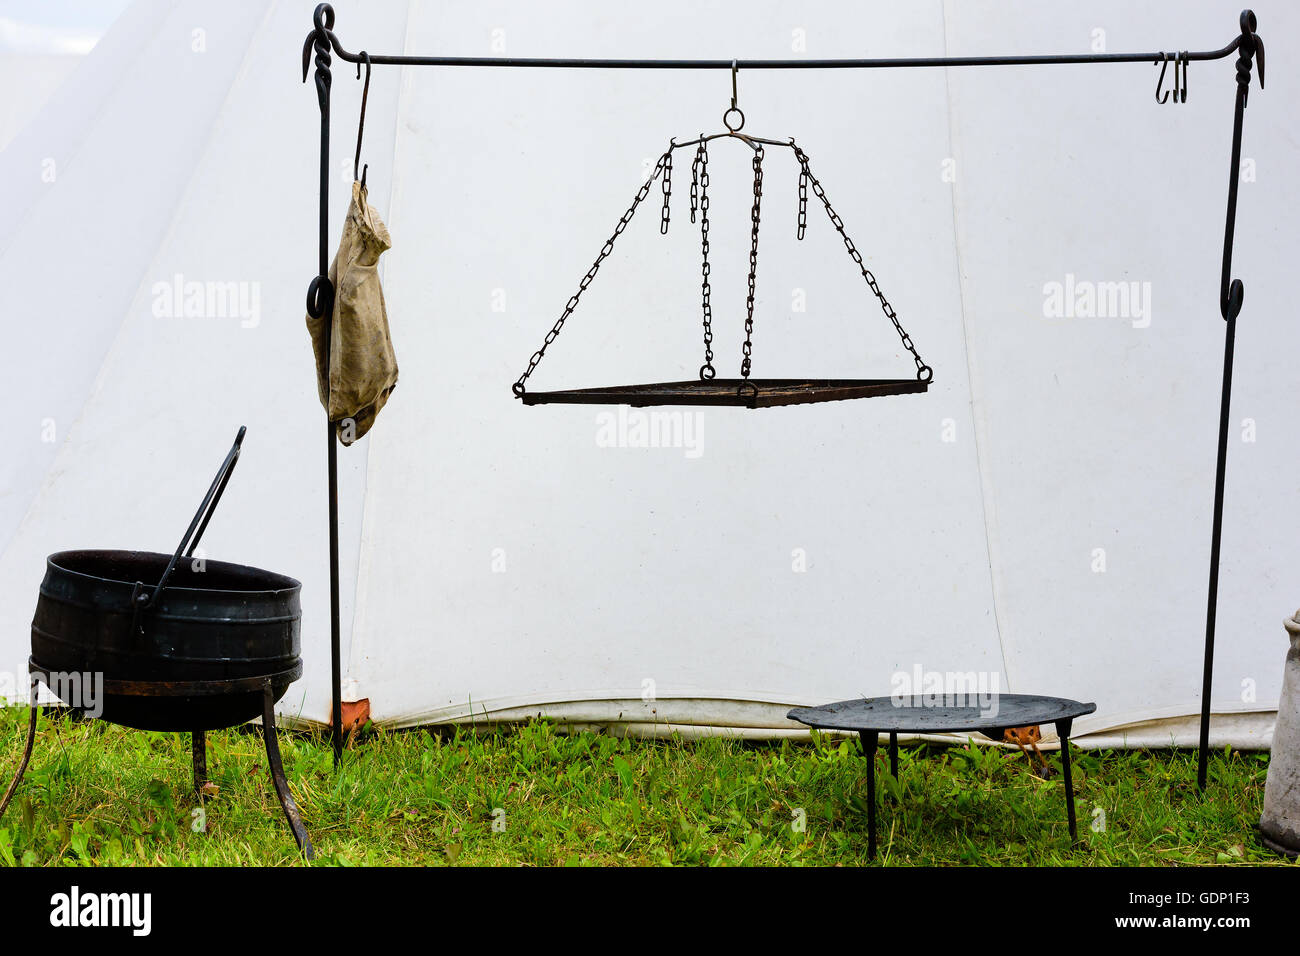 Grill-Rack und outdoor Kochgeräte vor einem weißen Zelt. Stockfoto